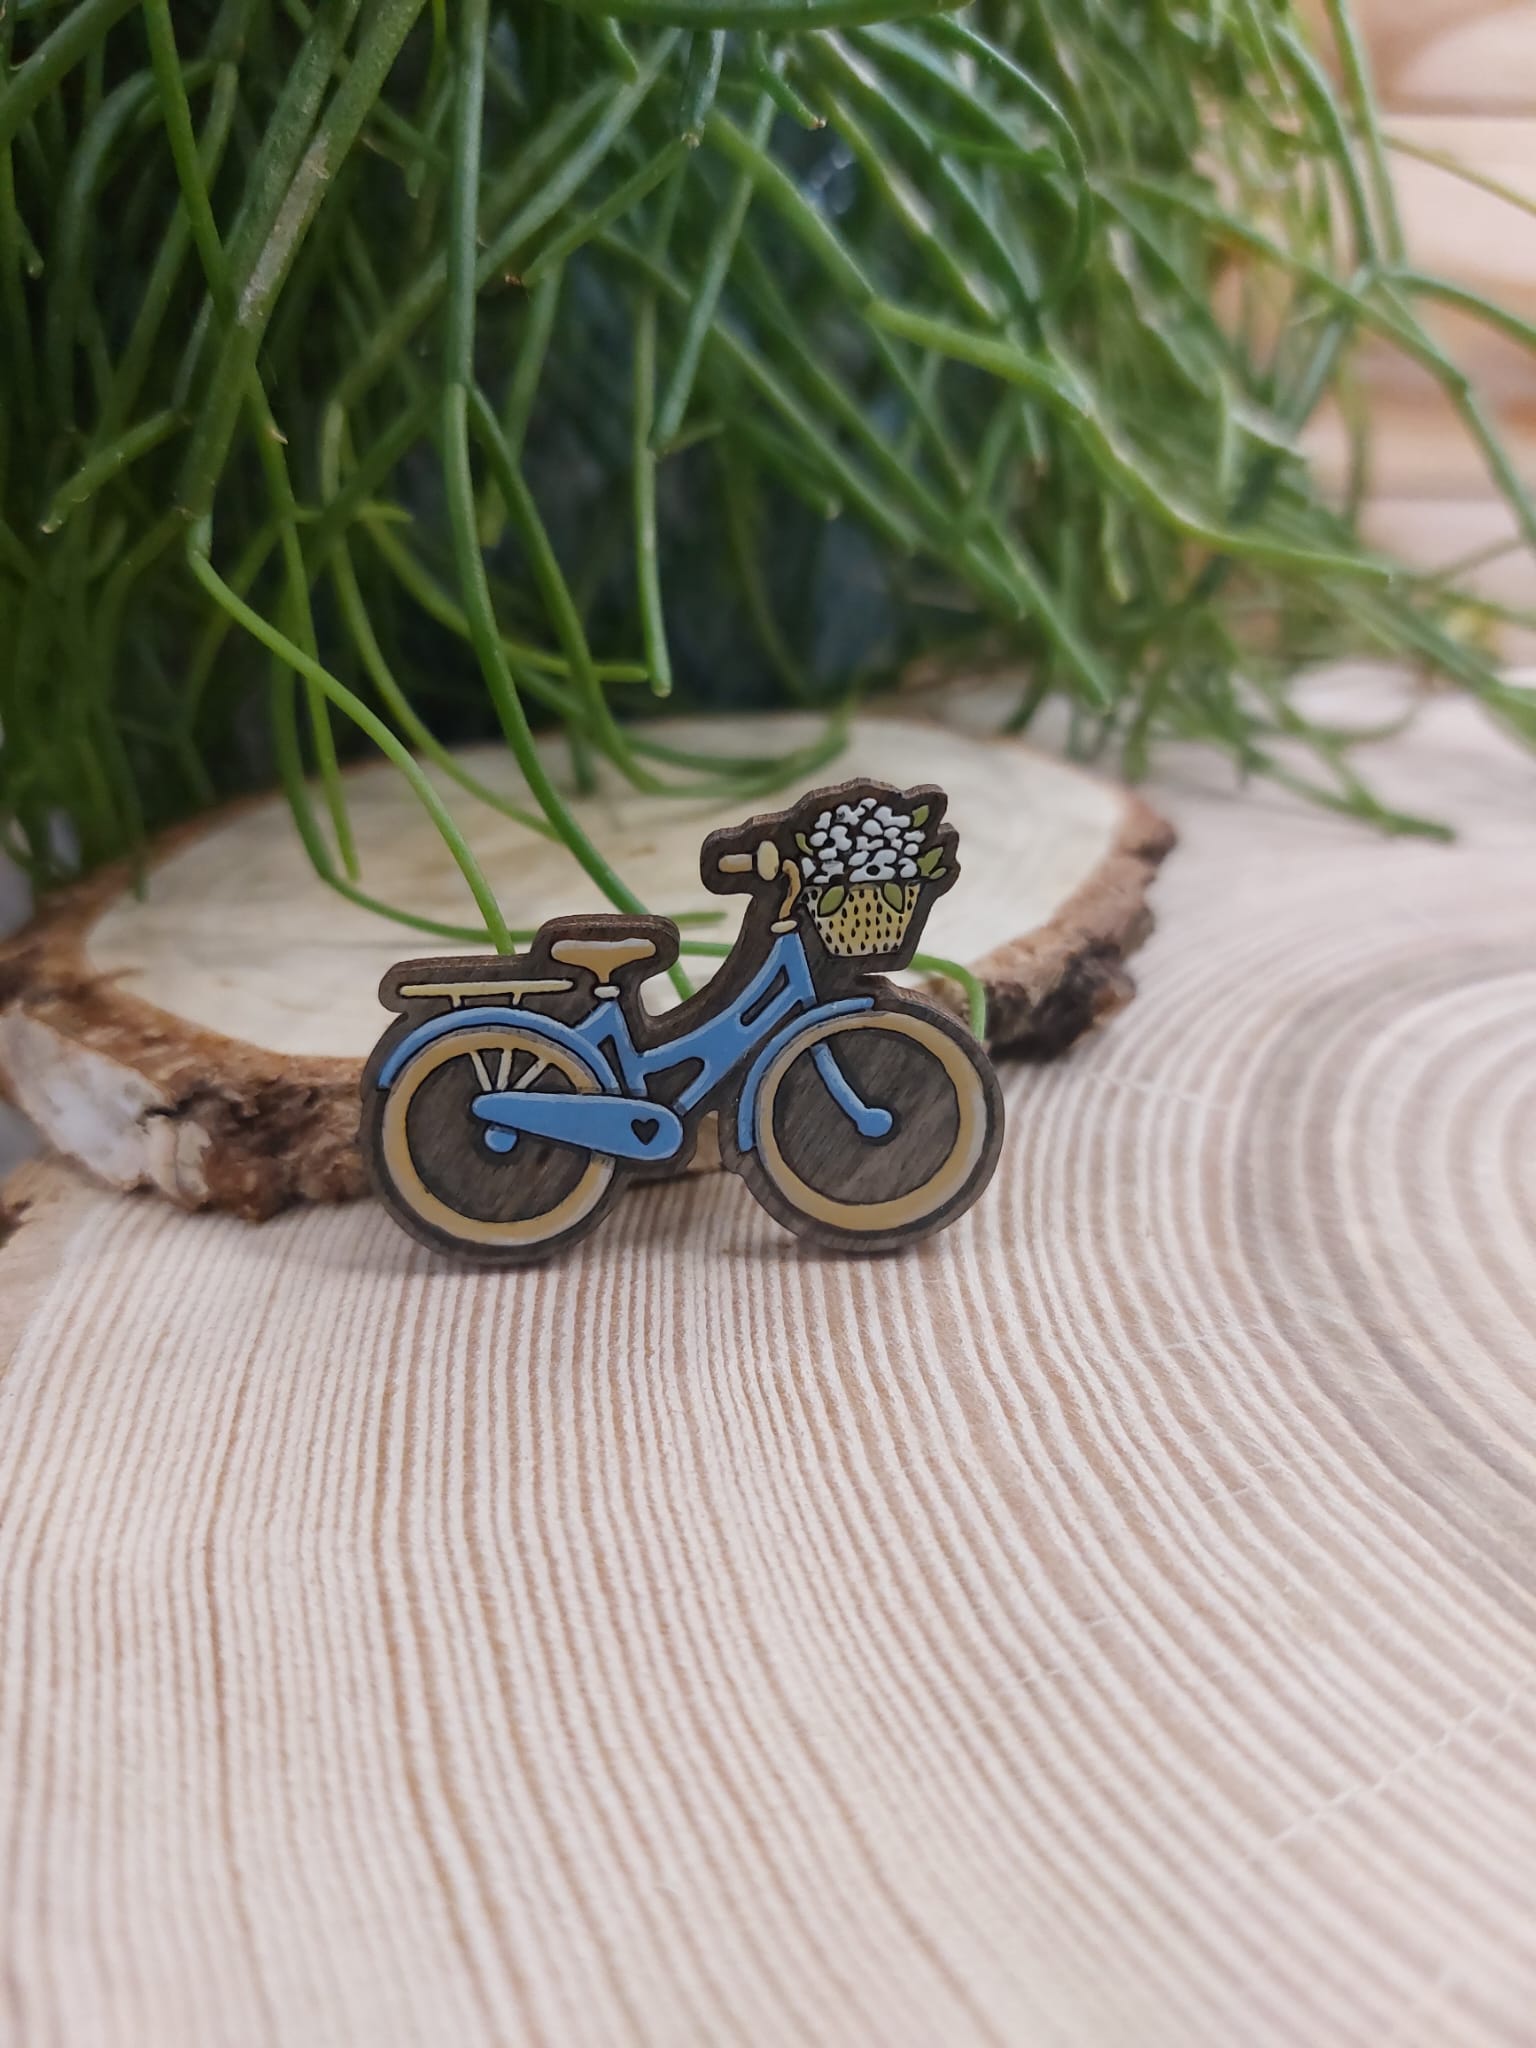 Na zdjęciu widać drewnianą, ręcznie malowaną broszkę z motywem roweru.